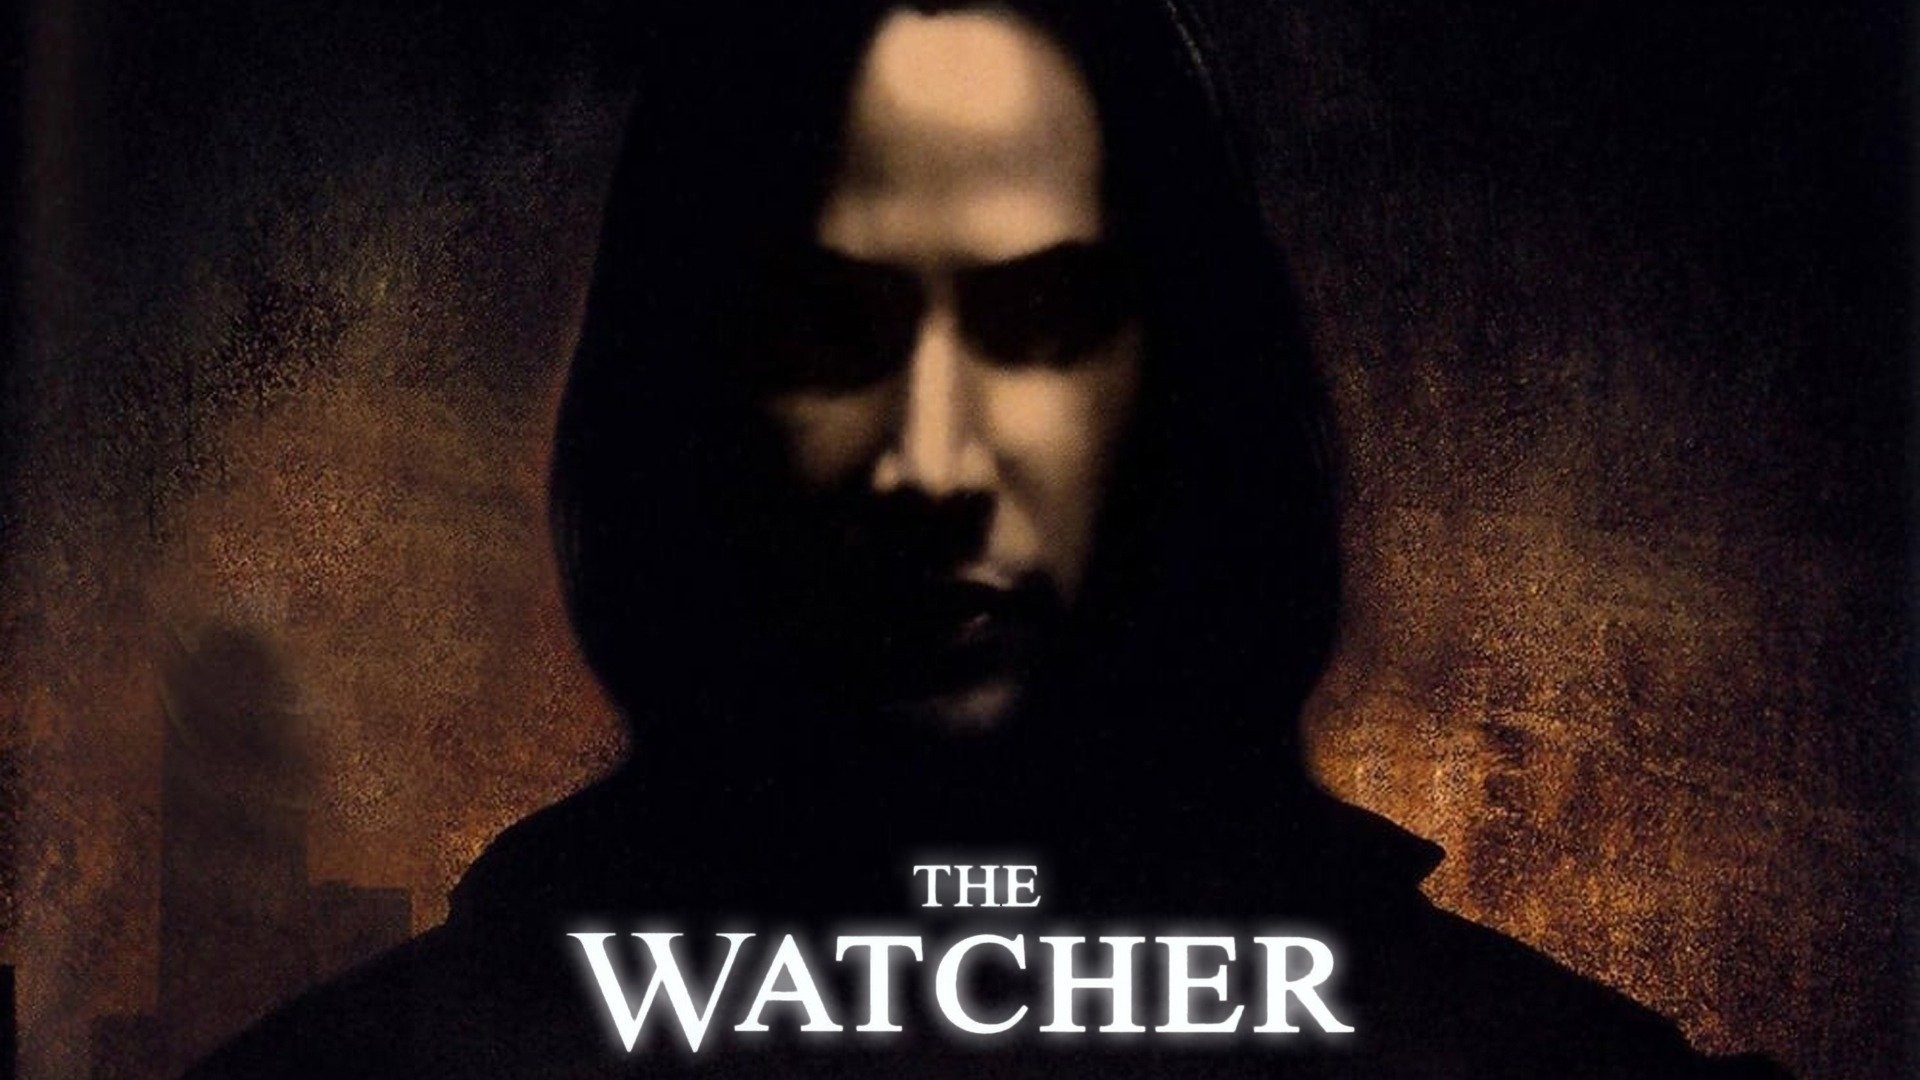 Watcher (The) - Original Movie Poster